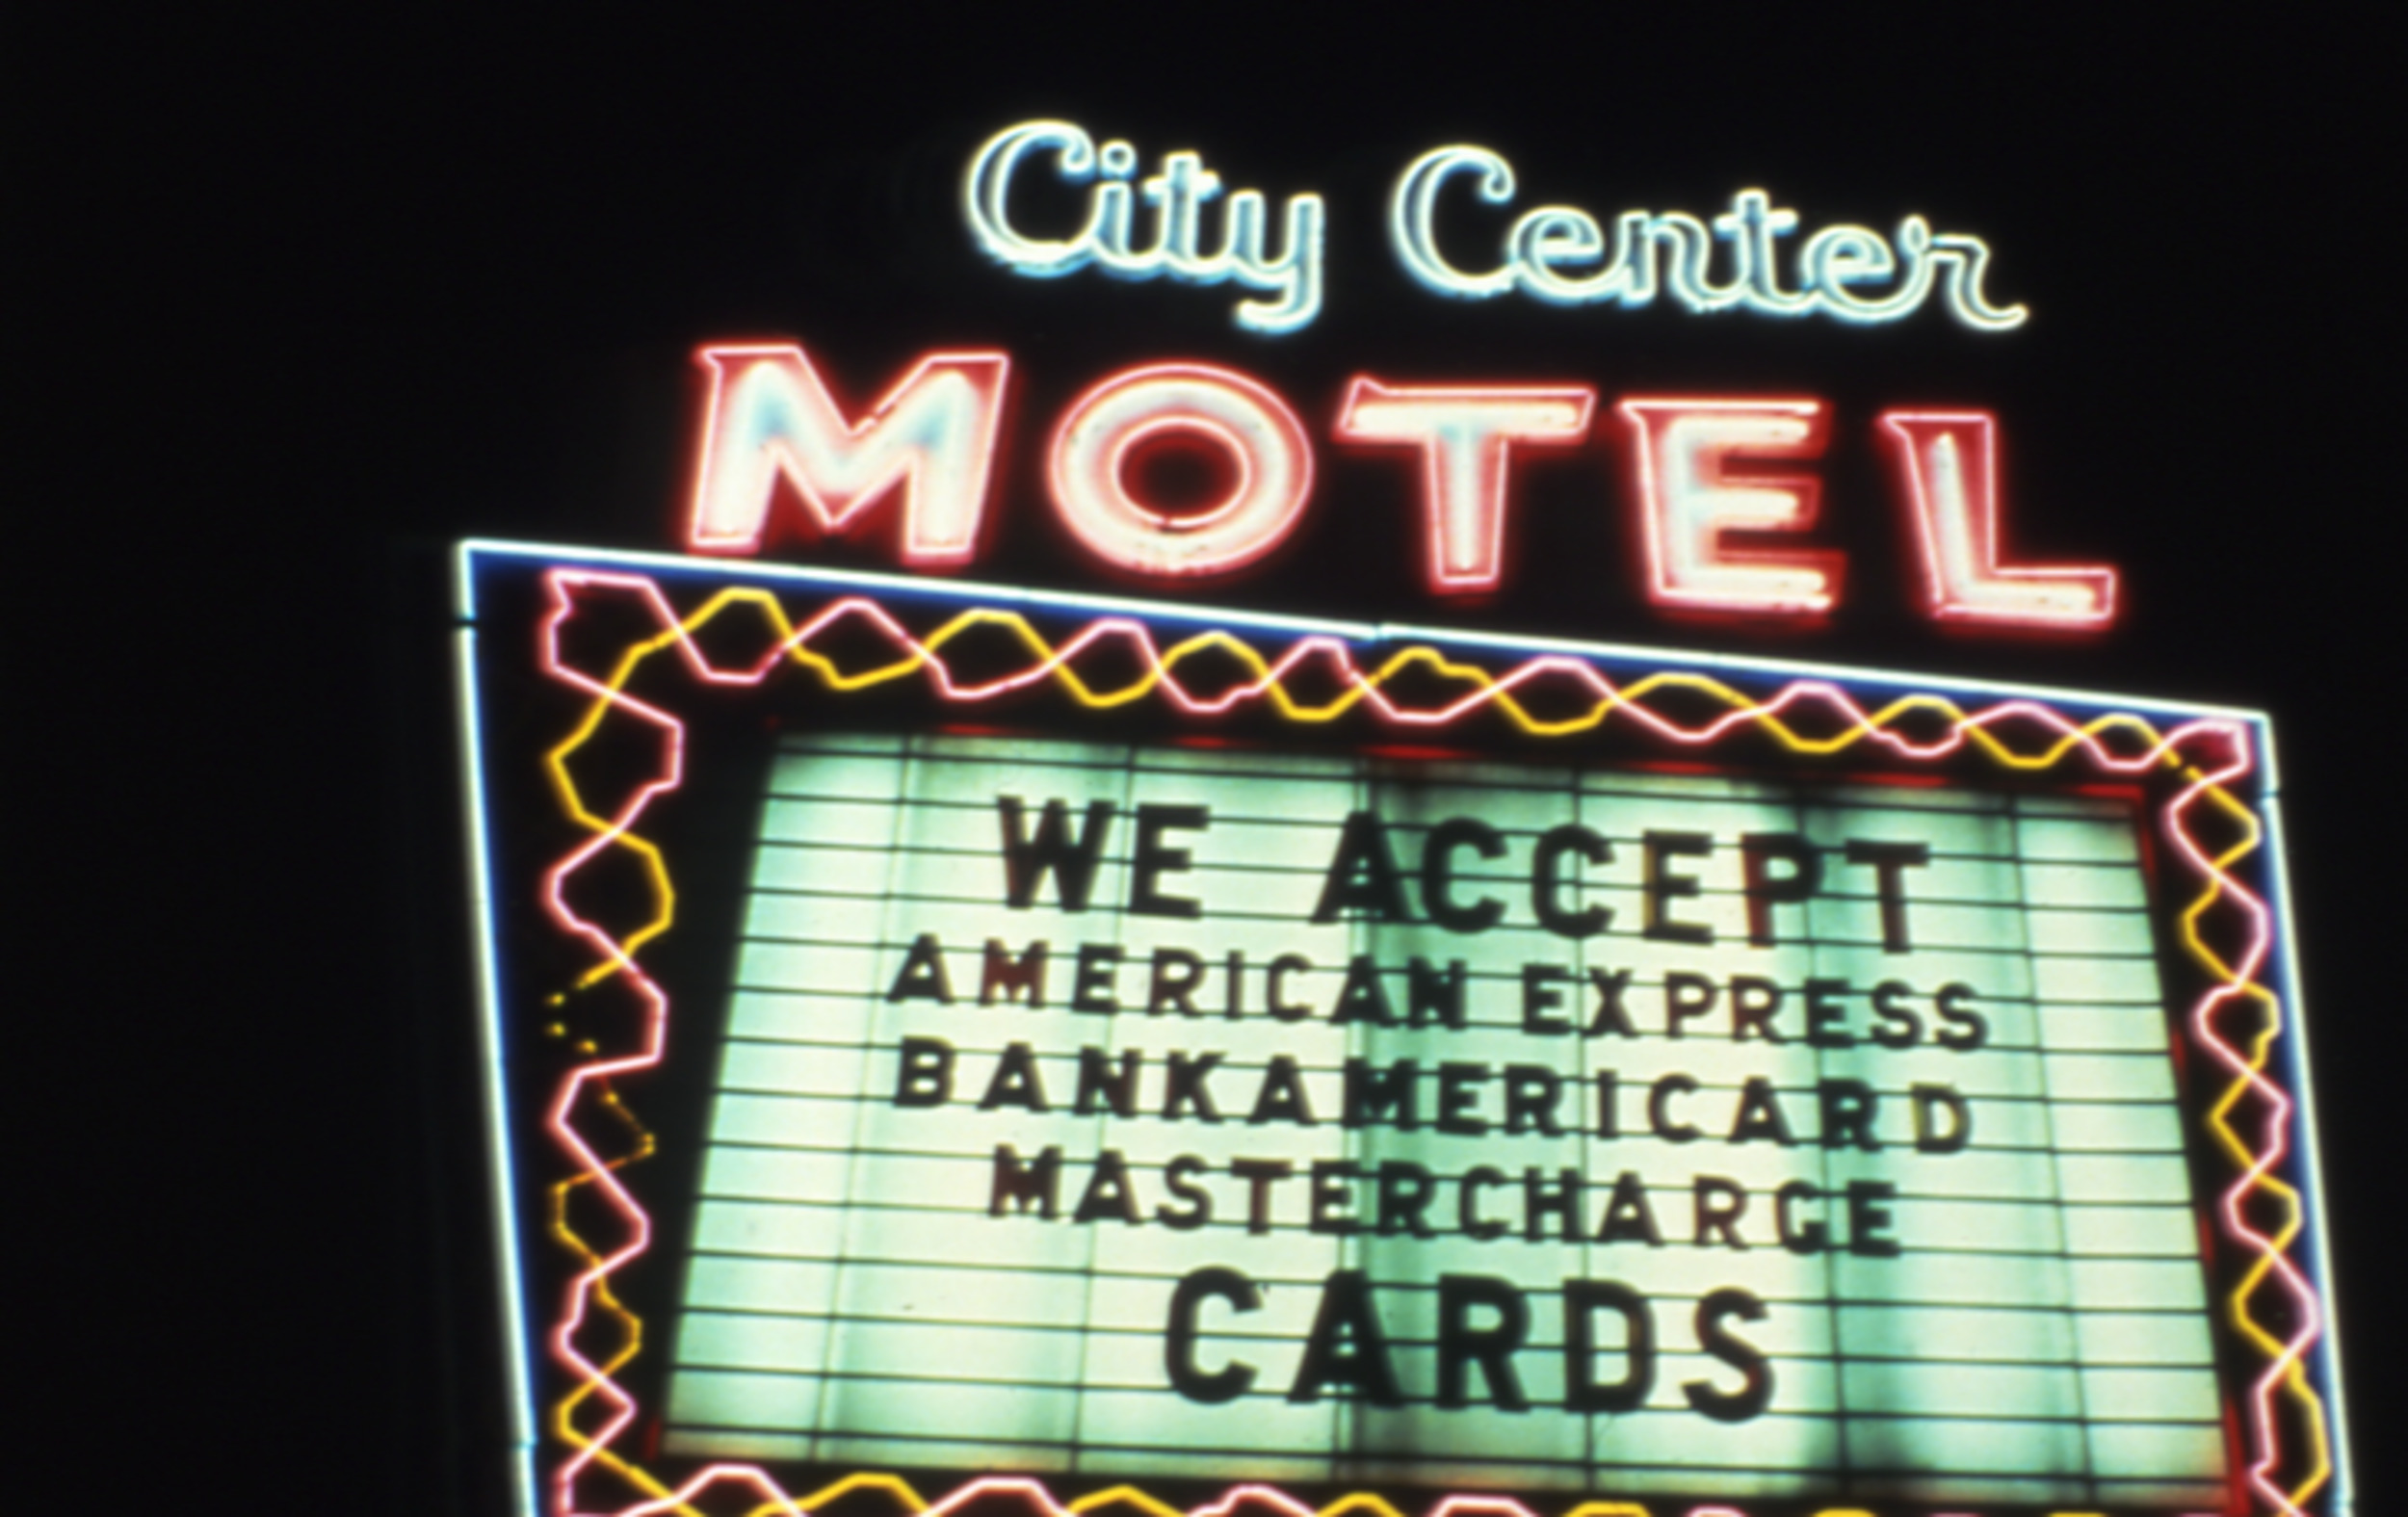 Slide of neon sign for the City Center Motel, Las Vegas, Nevada, 1986